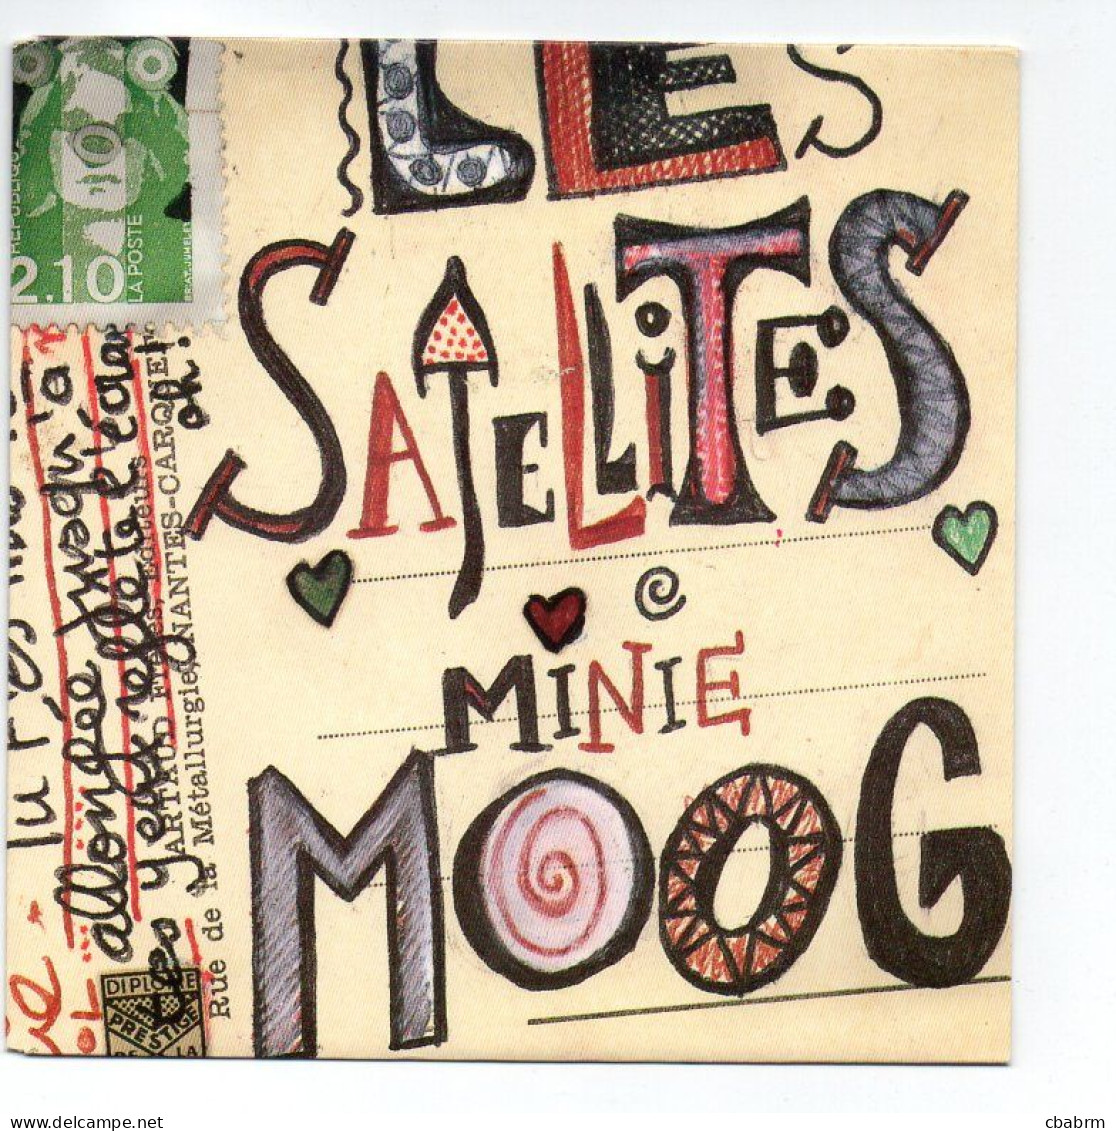 SP 45 TOURS LES SATELLITES MINIE MOOG 1991 FRANCE Squatt SQT 656826 7 - 7" - Autres - Musique Française